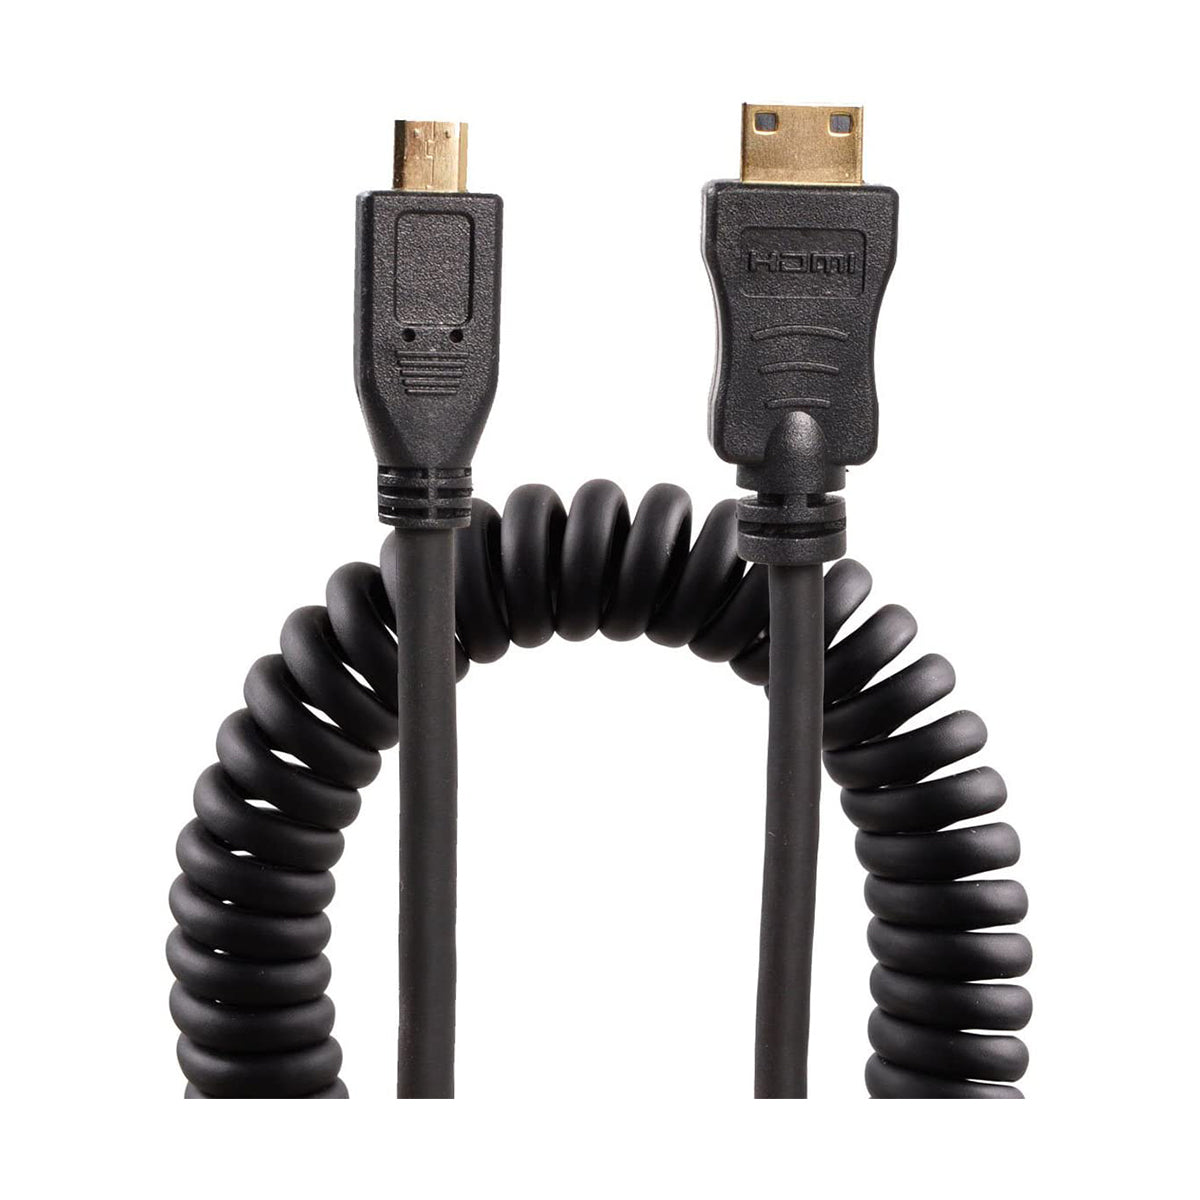 pictureline Mini HDMI to Micro HDMI Coiled 12” Cable